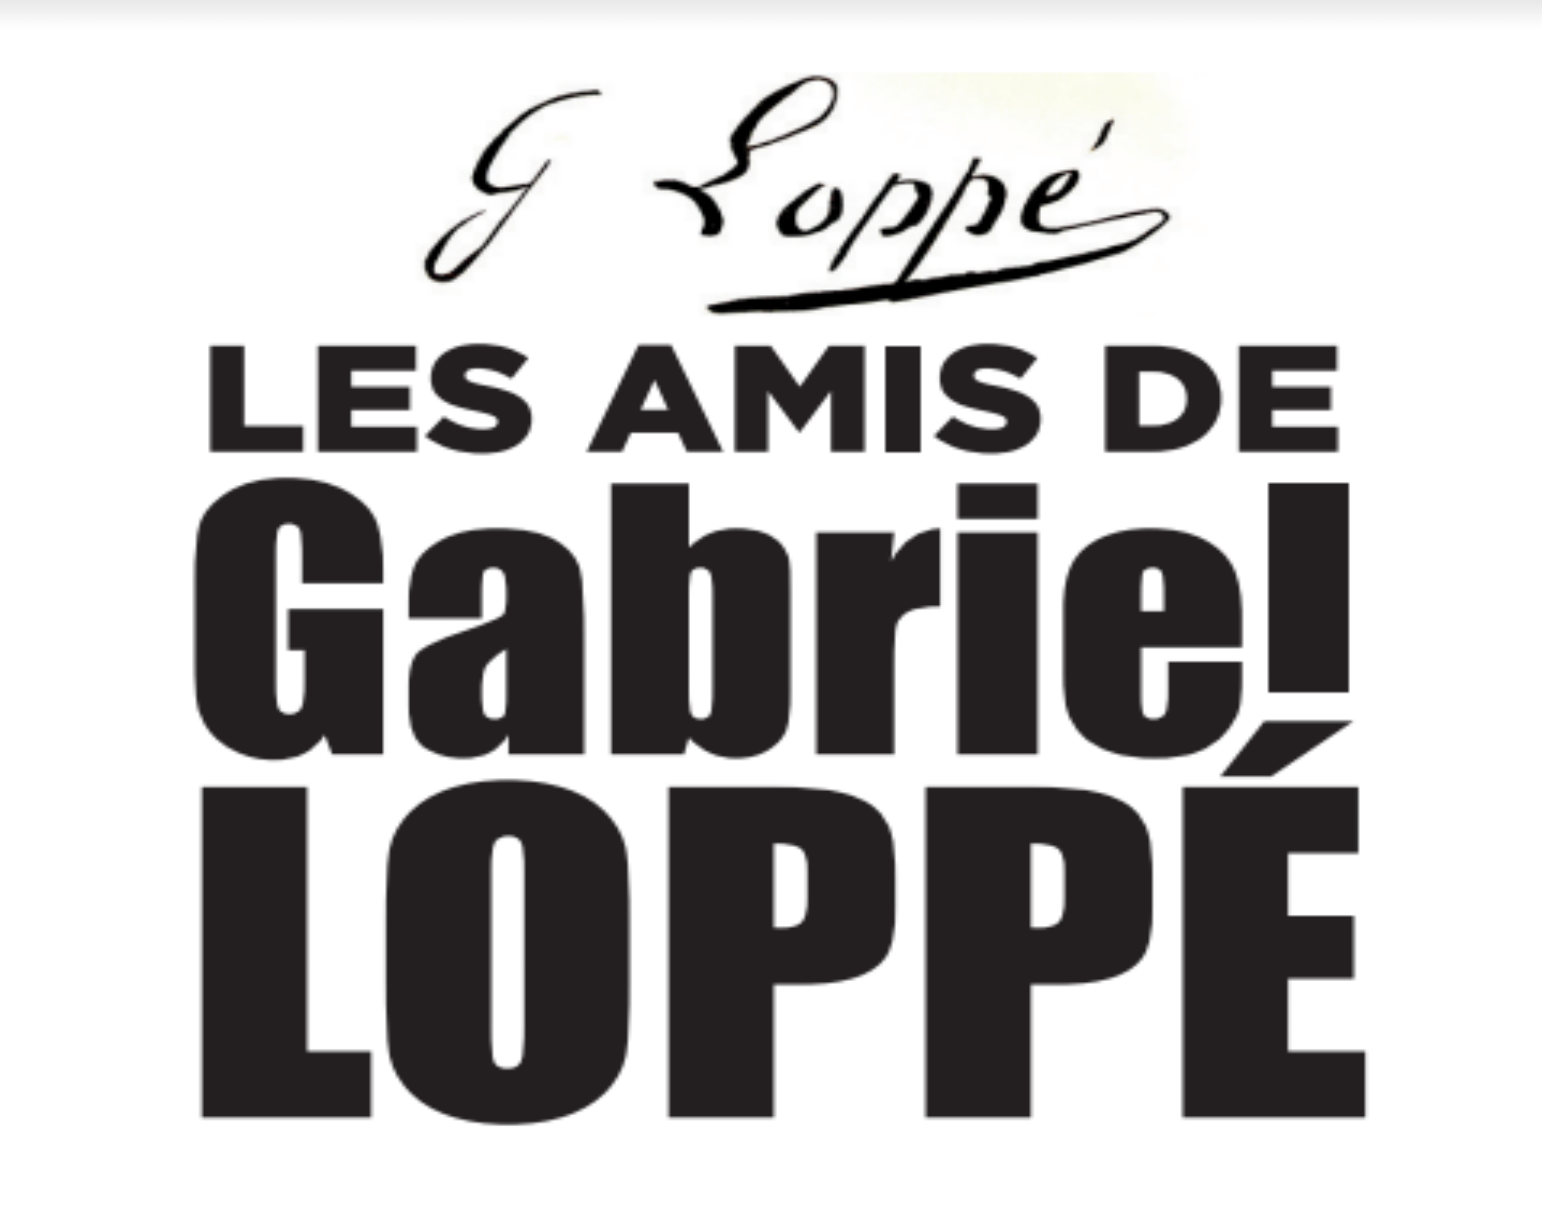 Les amis de Gabriel LOPPE atelier gauderique annecy restauration peinture oeuvre art